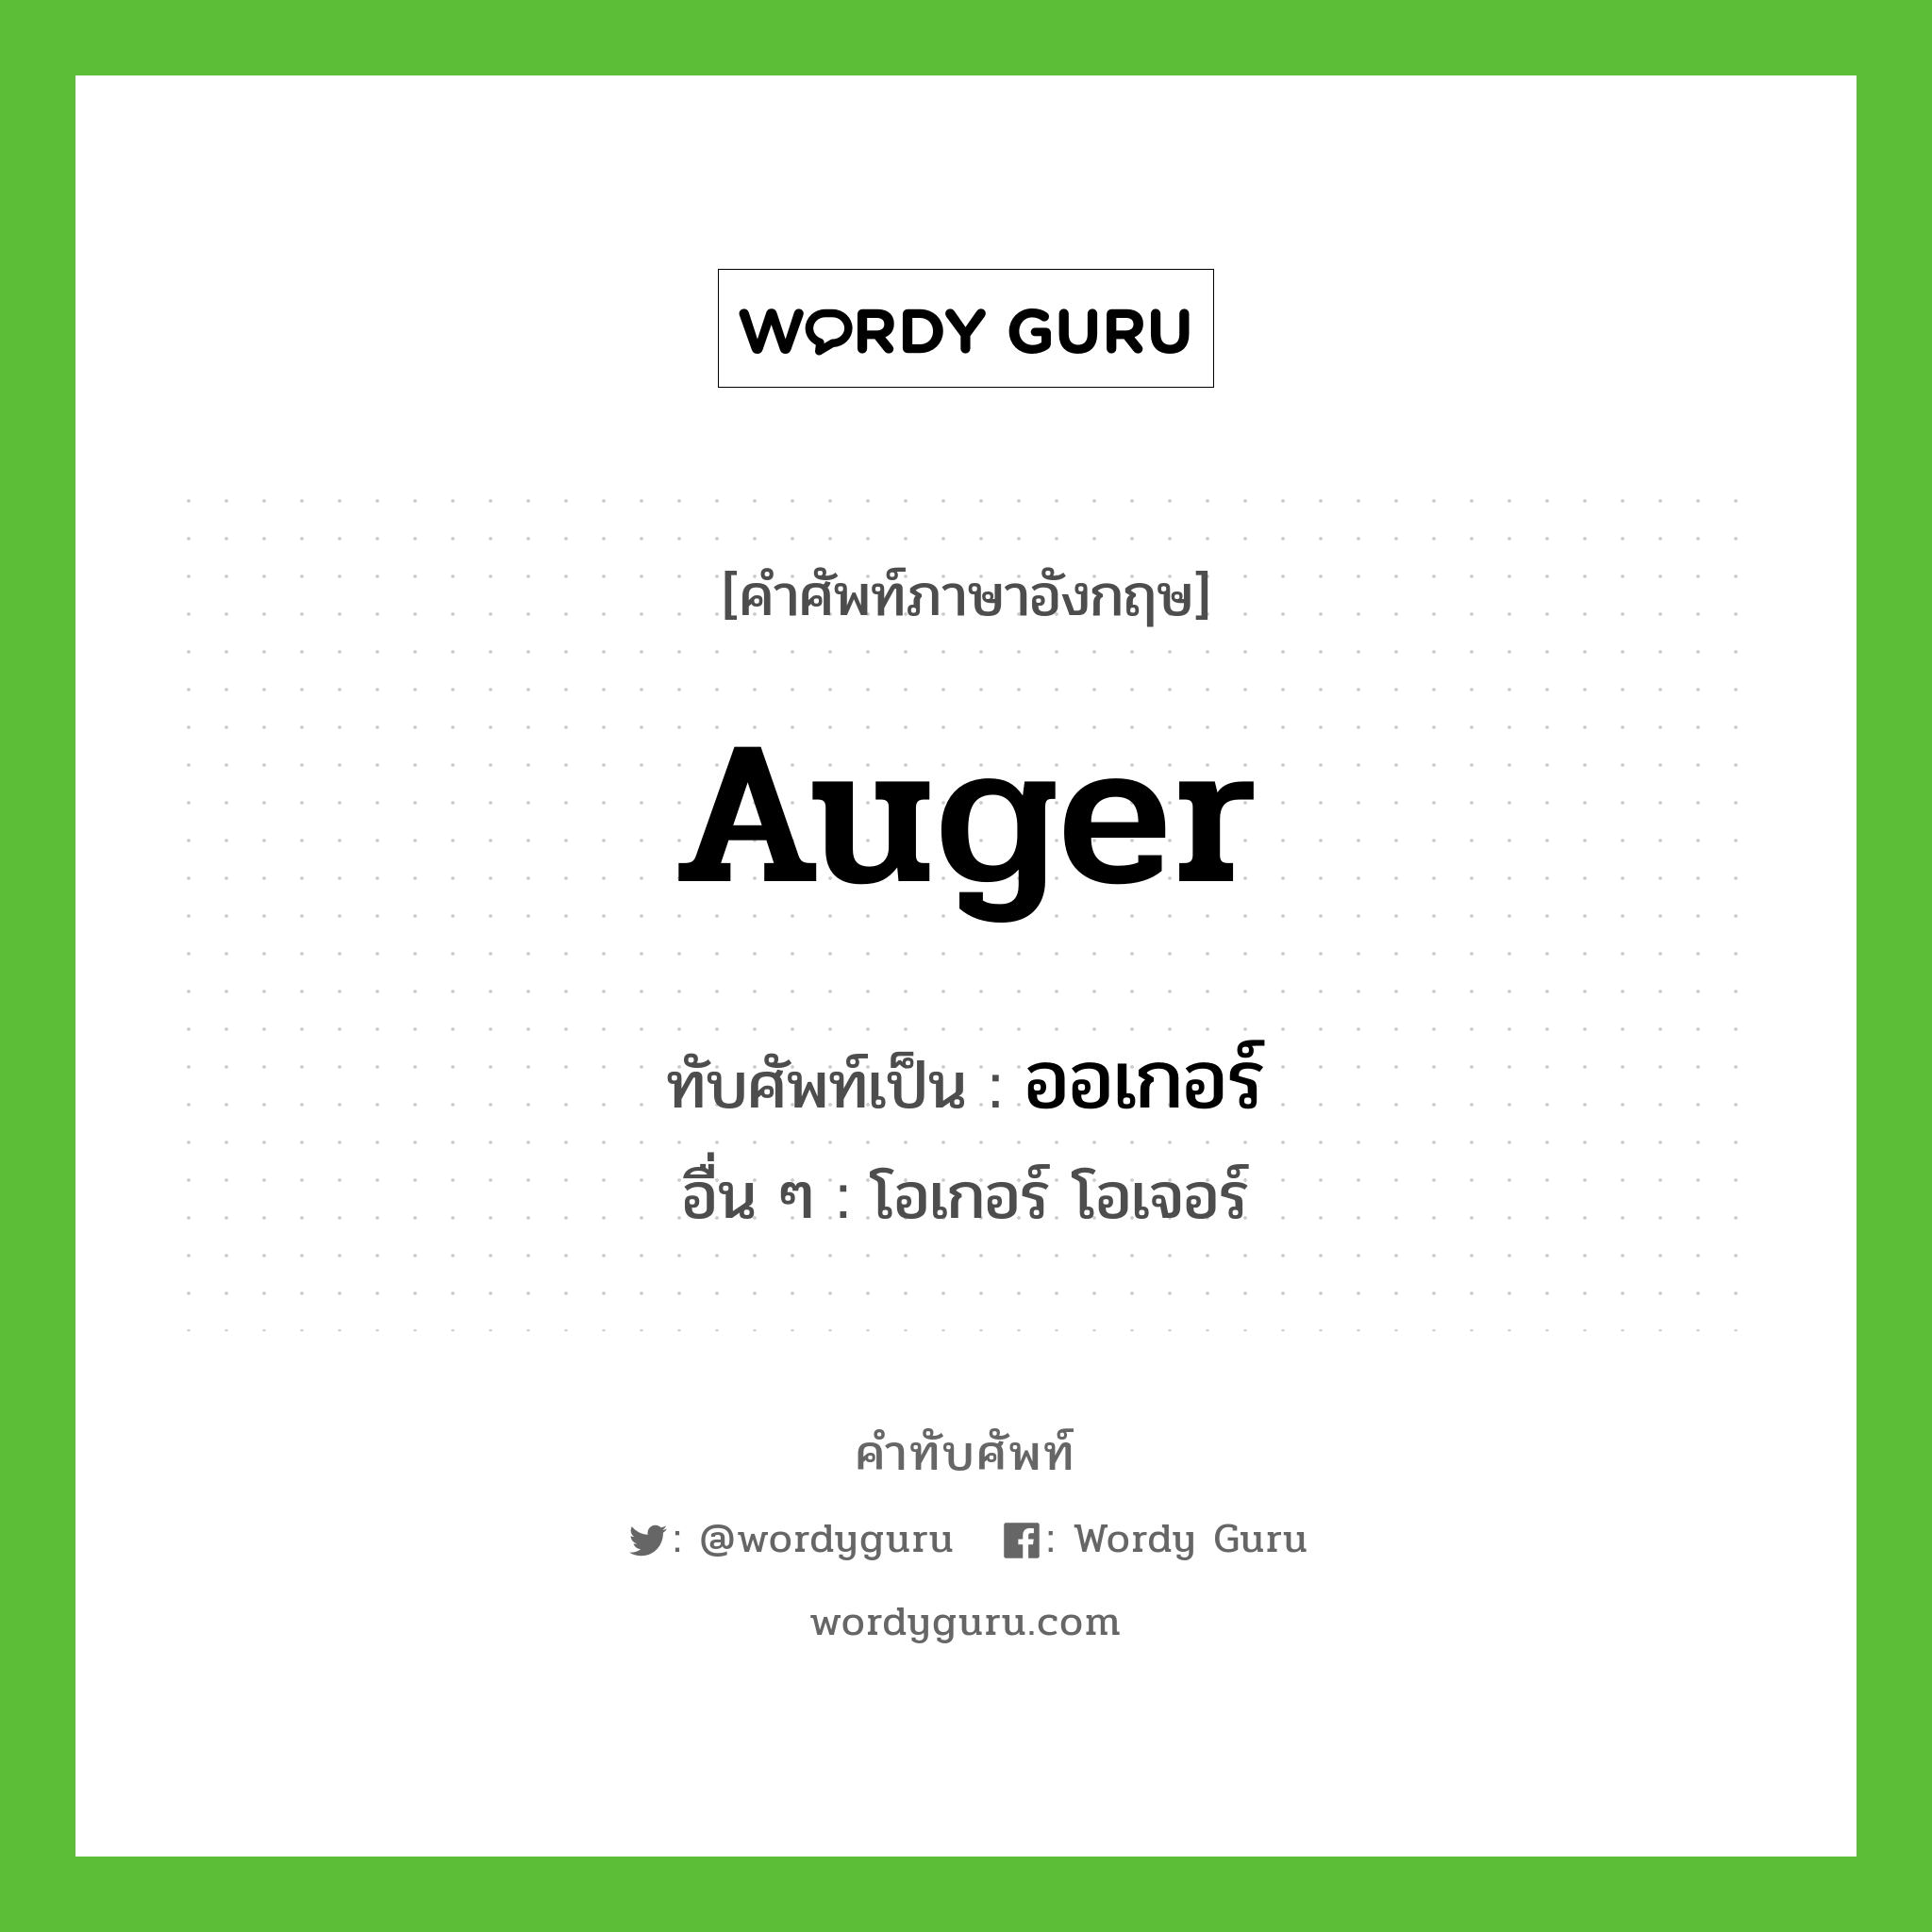 Auger เขียนเป็นคำไทยว่าอะไร?, คำศัพท์ภาษาอังกฤษ Auger ทับศัพท์เป็น ออเกอร์ อื่น ๆ โอเกอร์ โอเจอร์